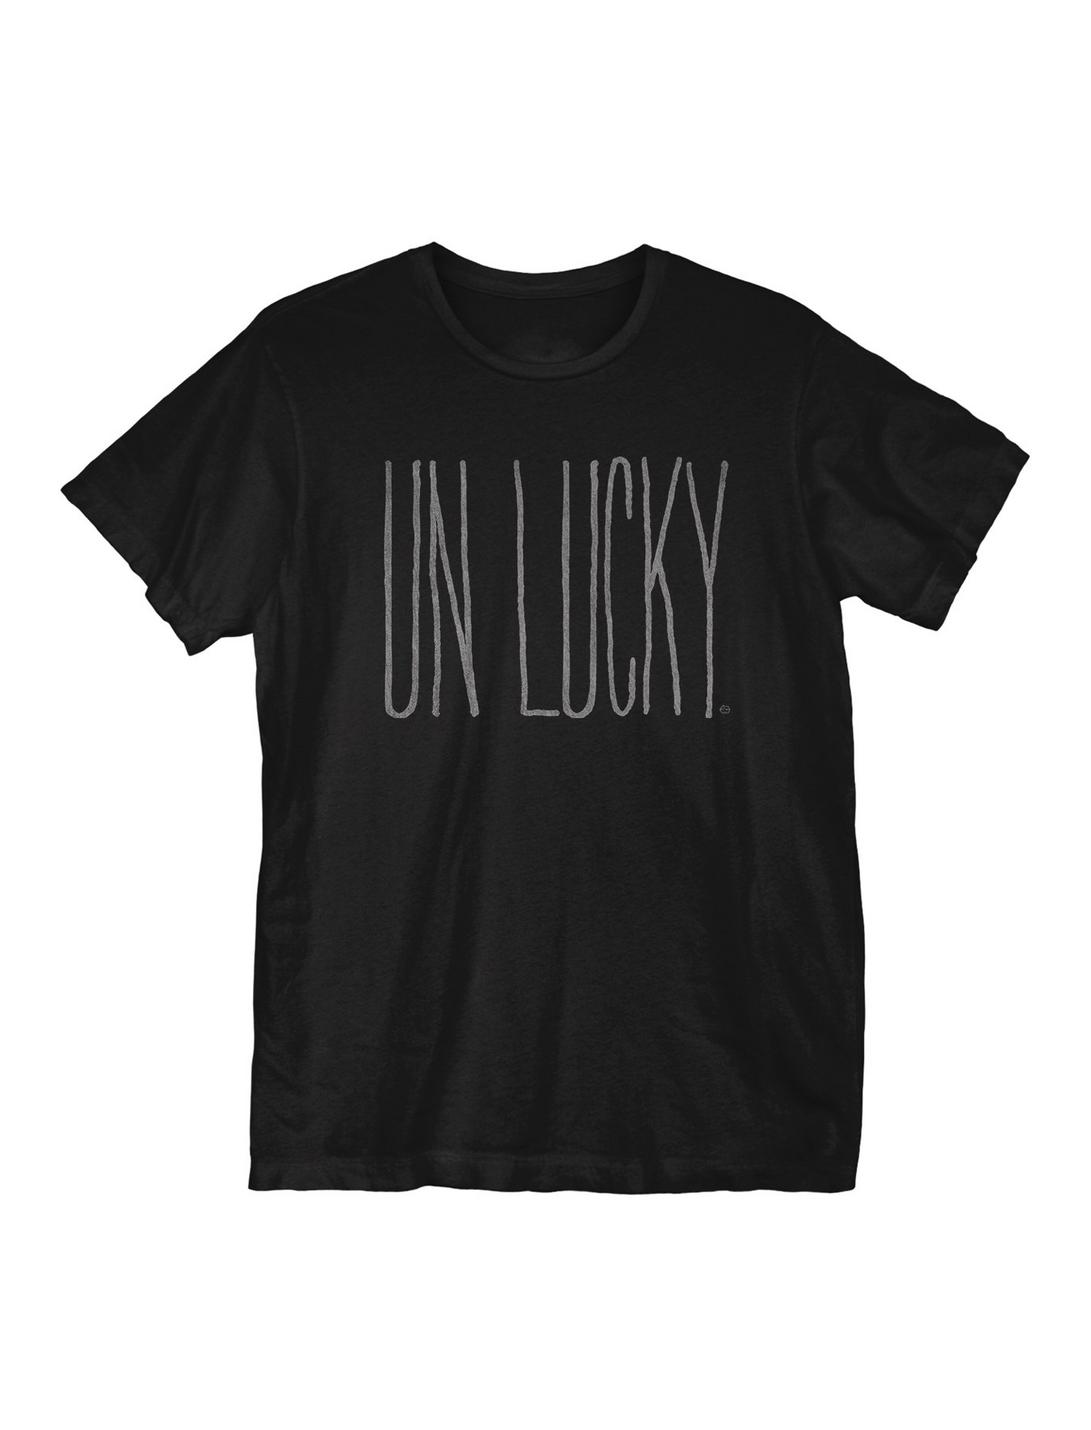 Unlucky T-Shirt, BLACK, hi-res